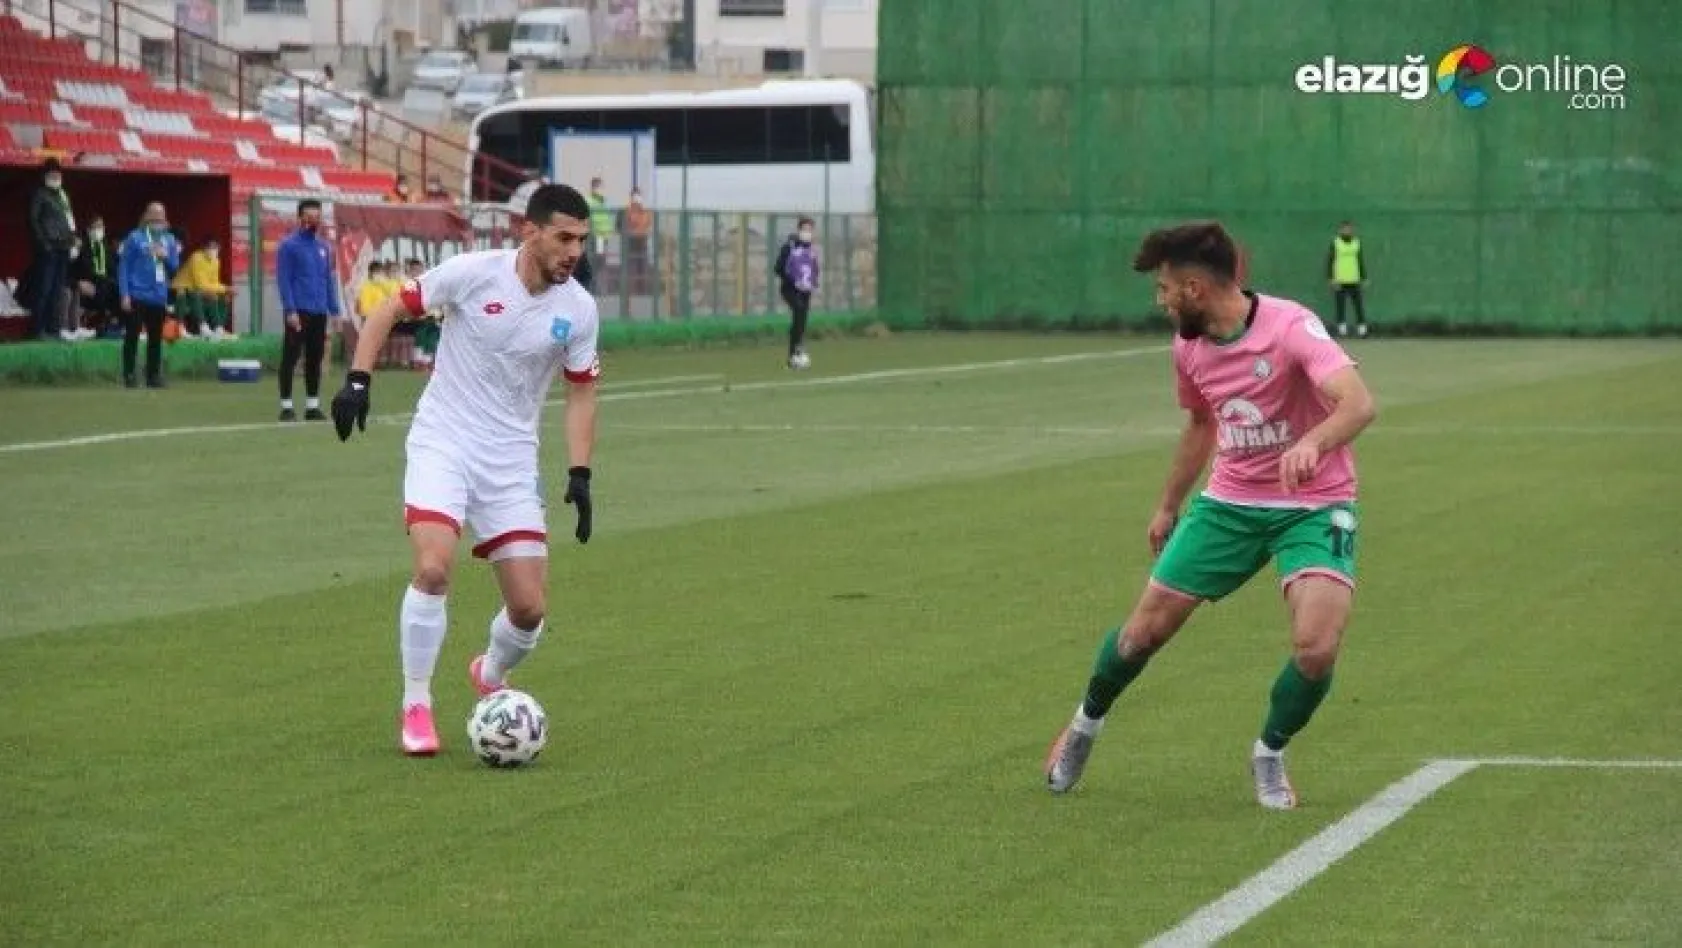 Elazığ Karakoçan FK uzatmalarda attığı golle berabere kaldı